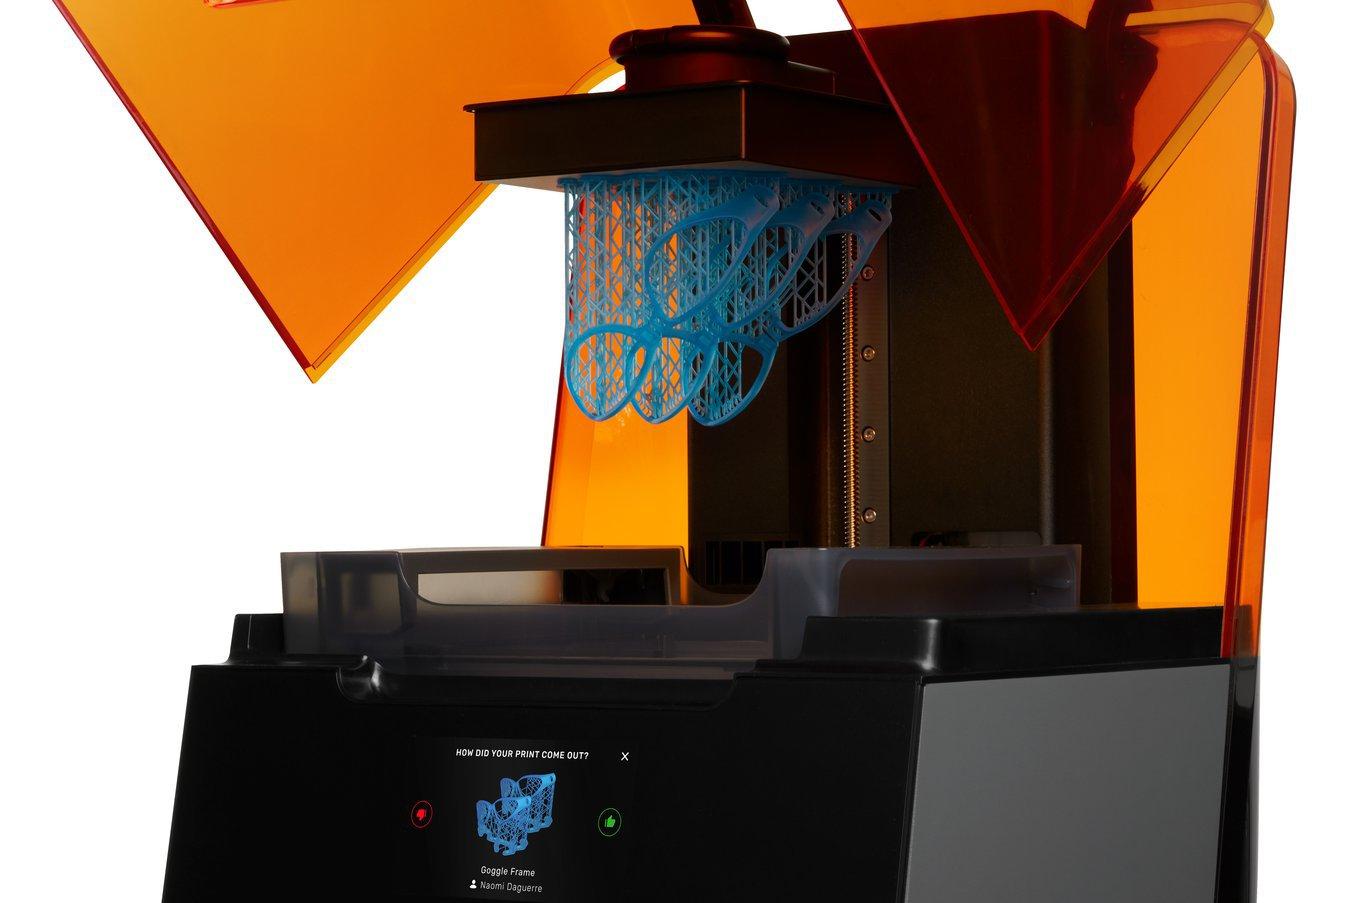 La stampante 3D SLA Form 3 ha un'alta risoluzione per l'asse Z e delle dimensioni minime dei dettagli ridotte sul piano XY, consentendo quindi di realizzare particolari precisi.